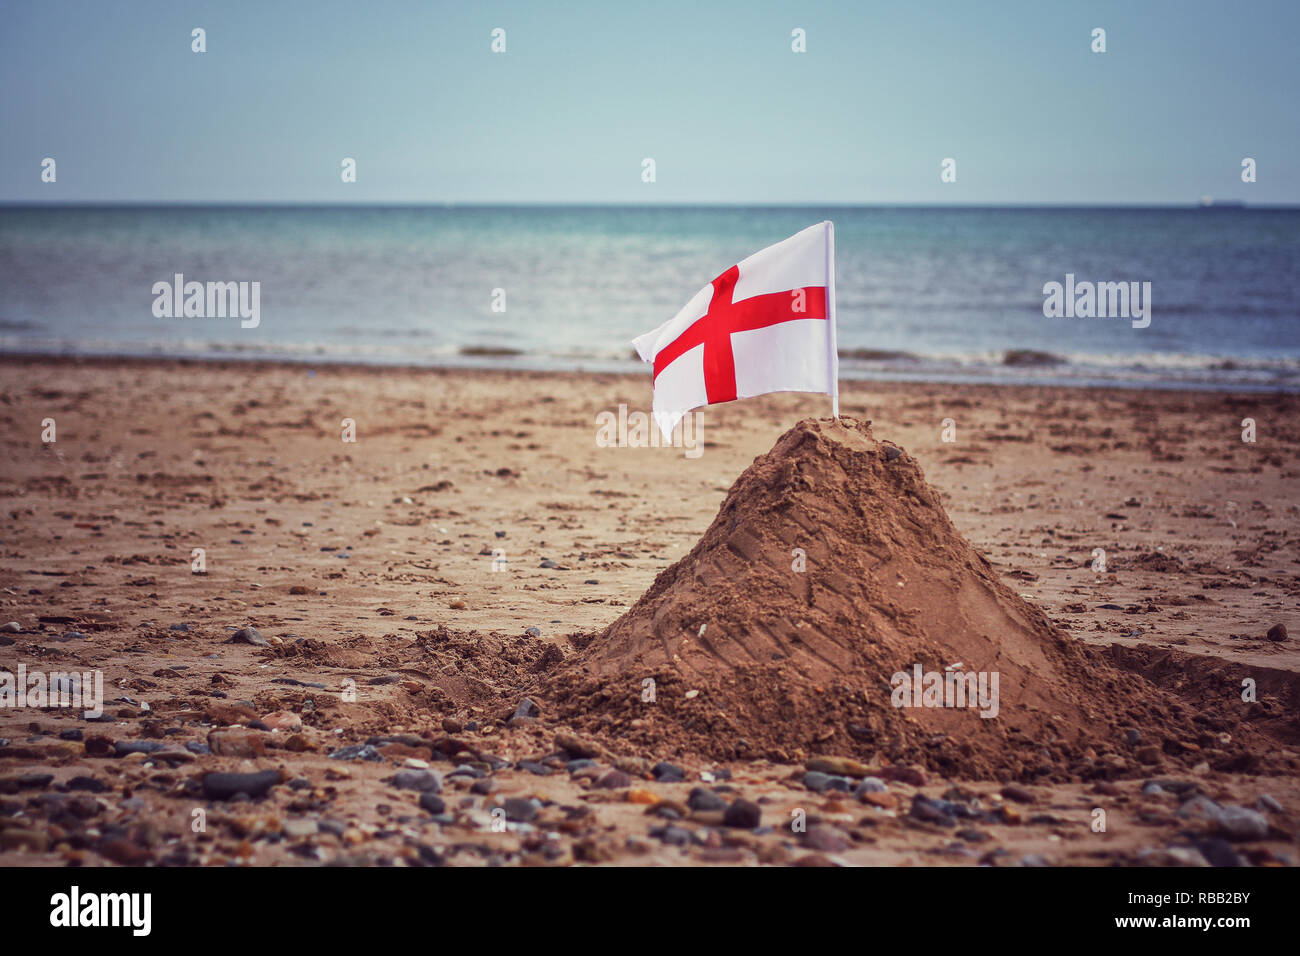 Ein englischer St. George's Cross Flag in einem Sandcastle auf einem Britischen Strand, die Grenze und Boundary Control Während der illegalen Einwanderung in Großbritannien Stockfoto